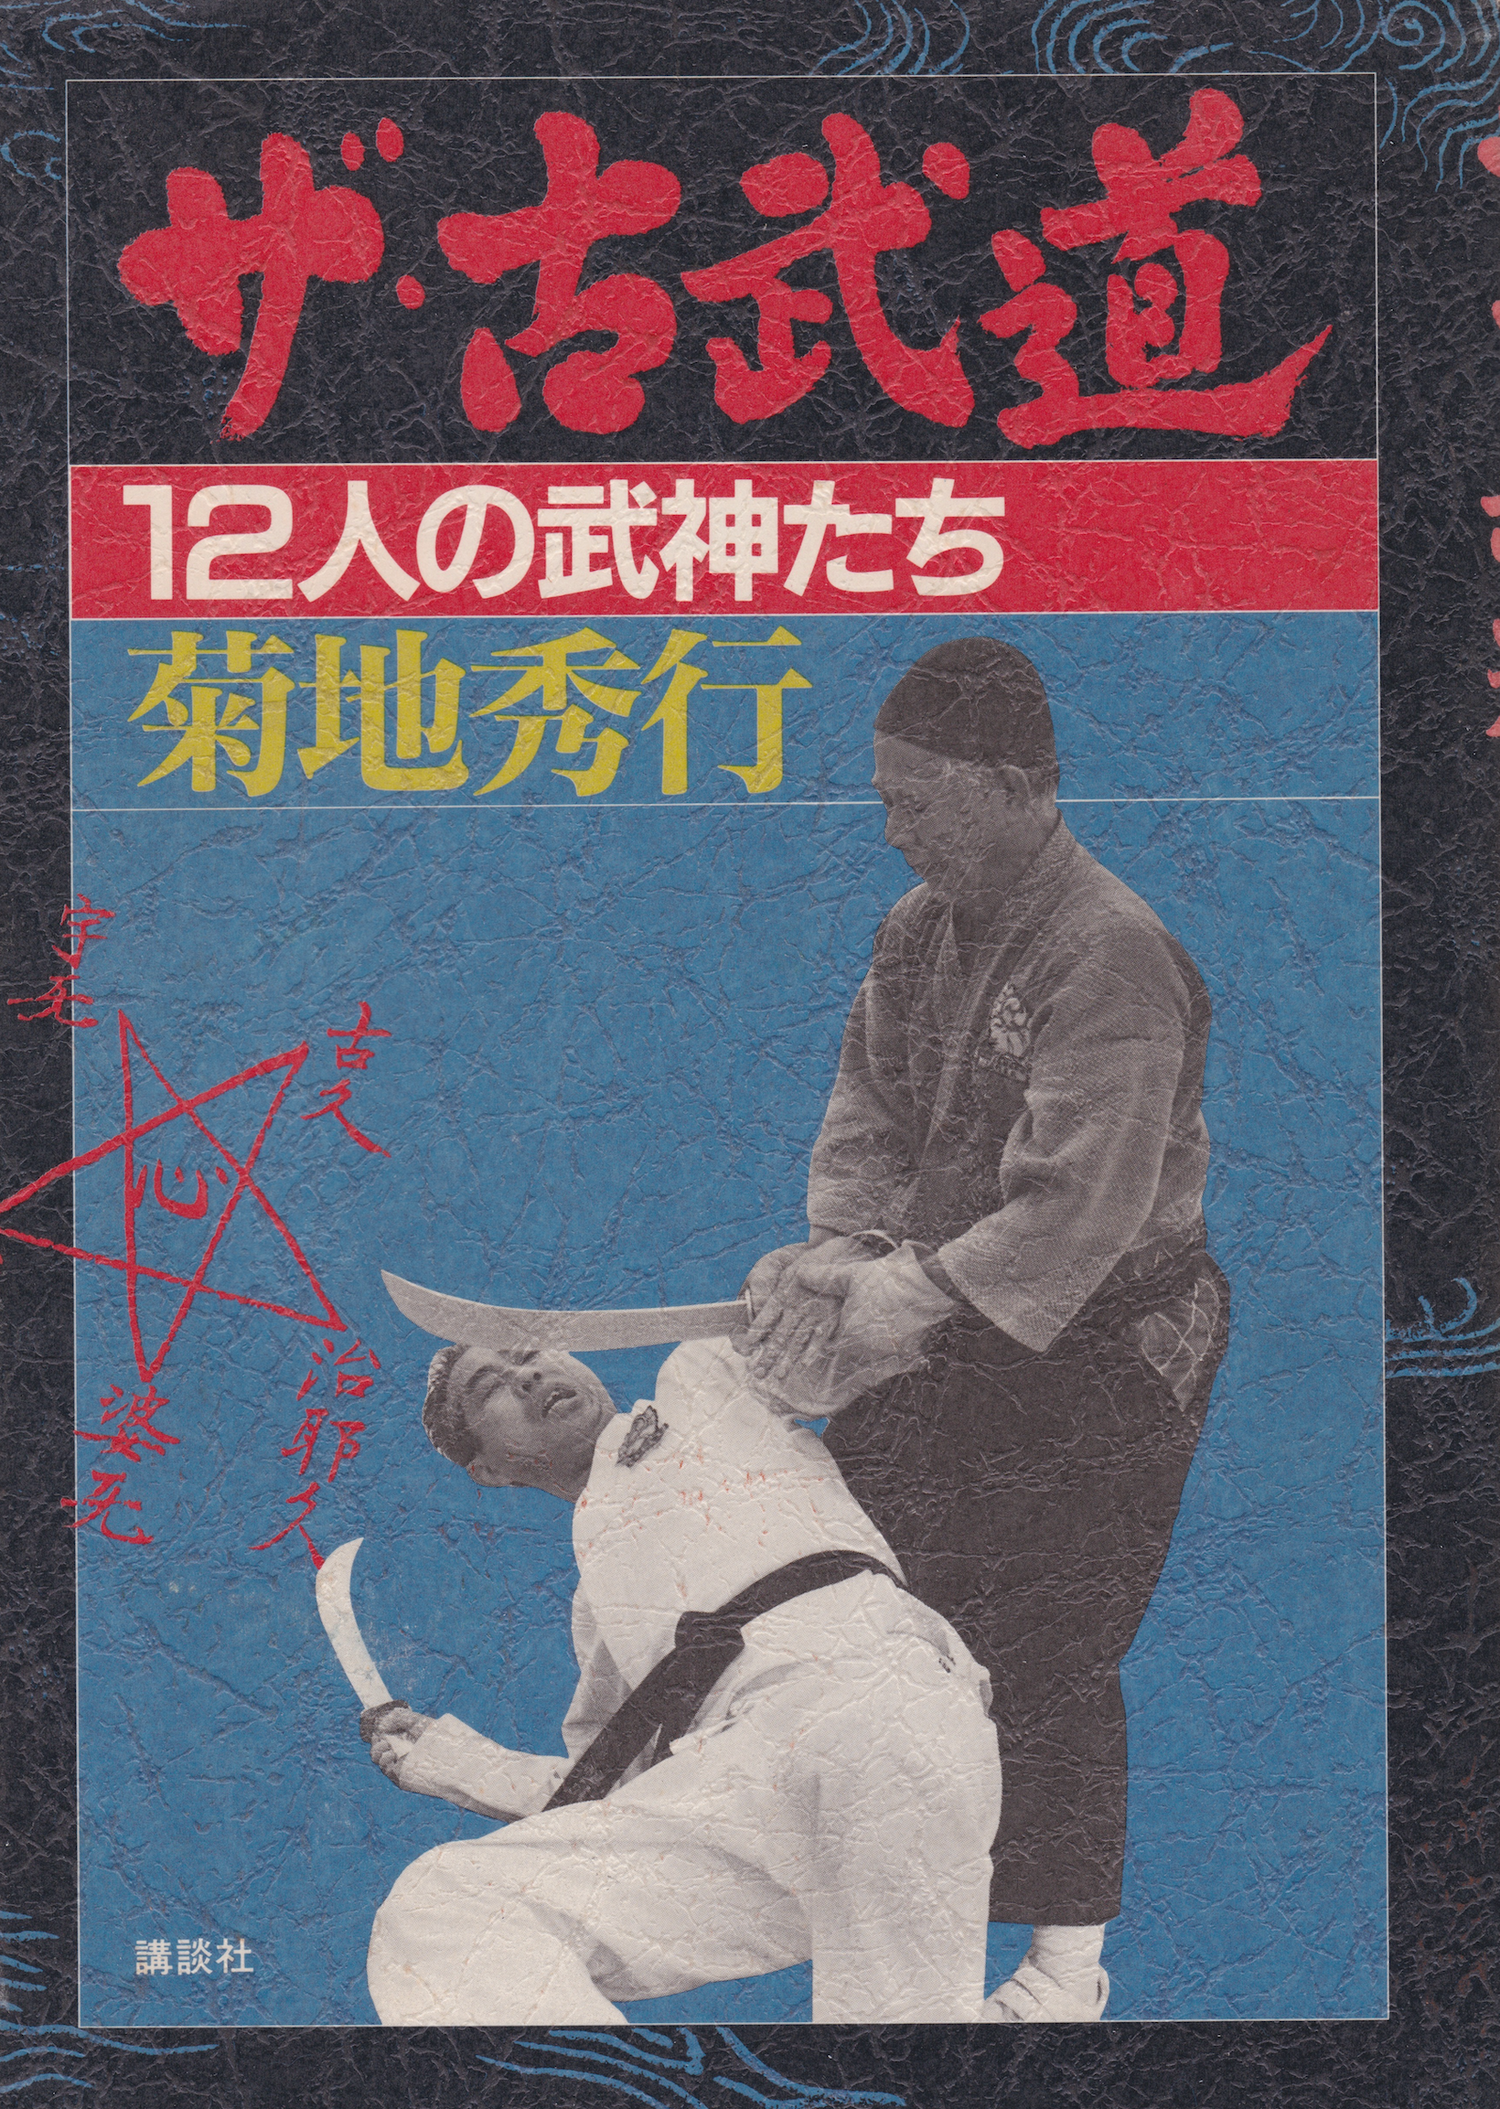 The Kobudo: 12 Martial Gods Book by Kikuchi Hideyuki (Preowned)